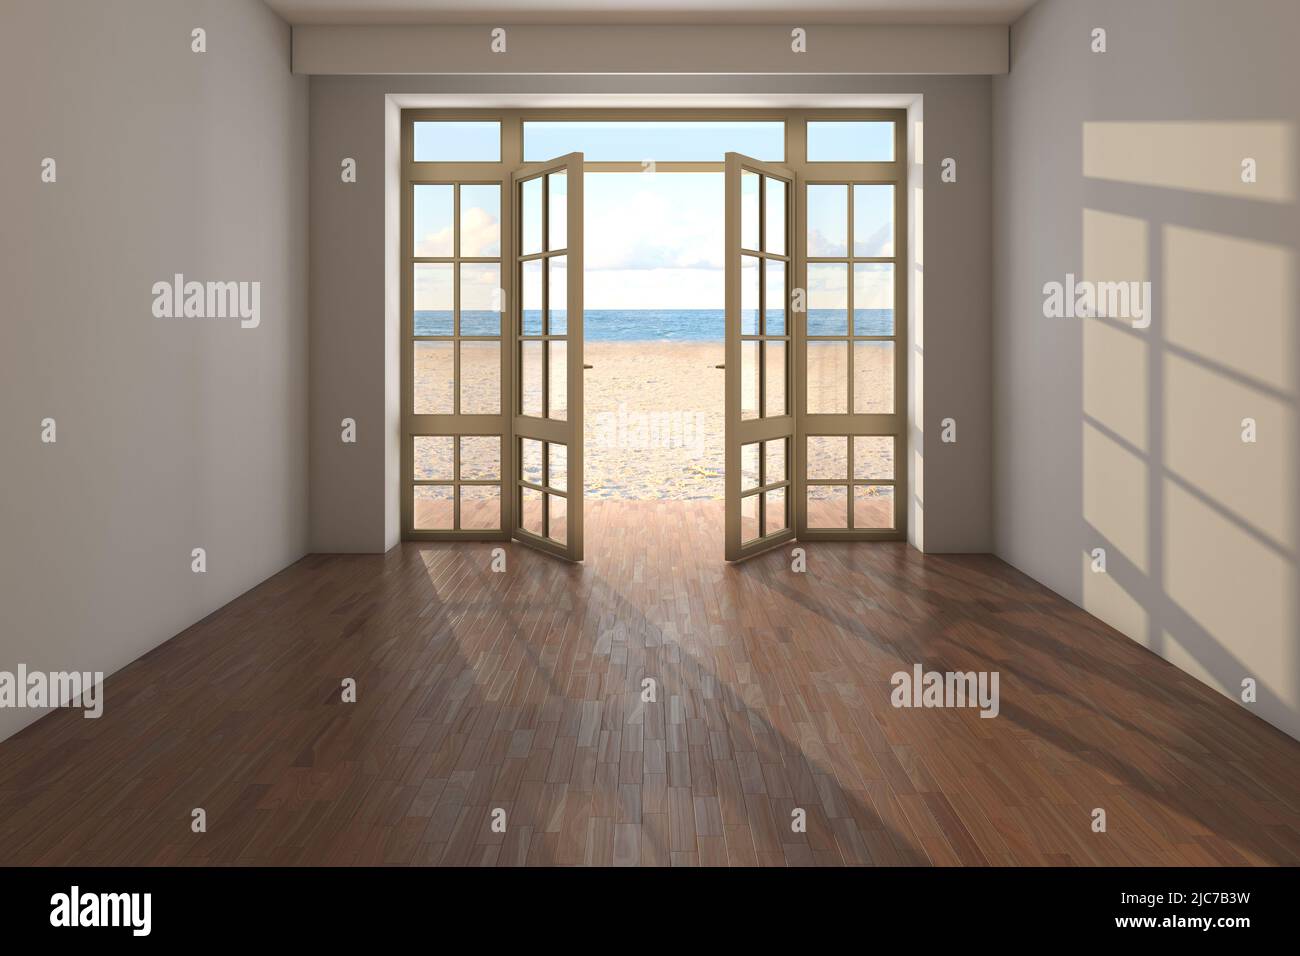 Chambre vide avec vue sur la mer près de la plage. Intérieur vide avec portes ouvertes donnant sur l'océan, le sable jaune et les nuages. Parquet sombre et murs en stuc beige. rendu 3D, 8K Ultra HD, 7680 x 5121 Banque D'Images